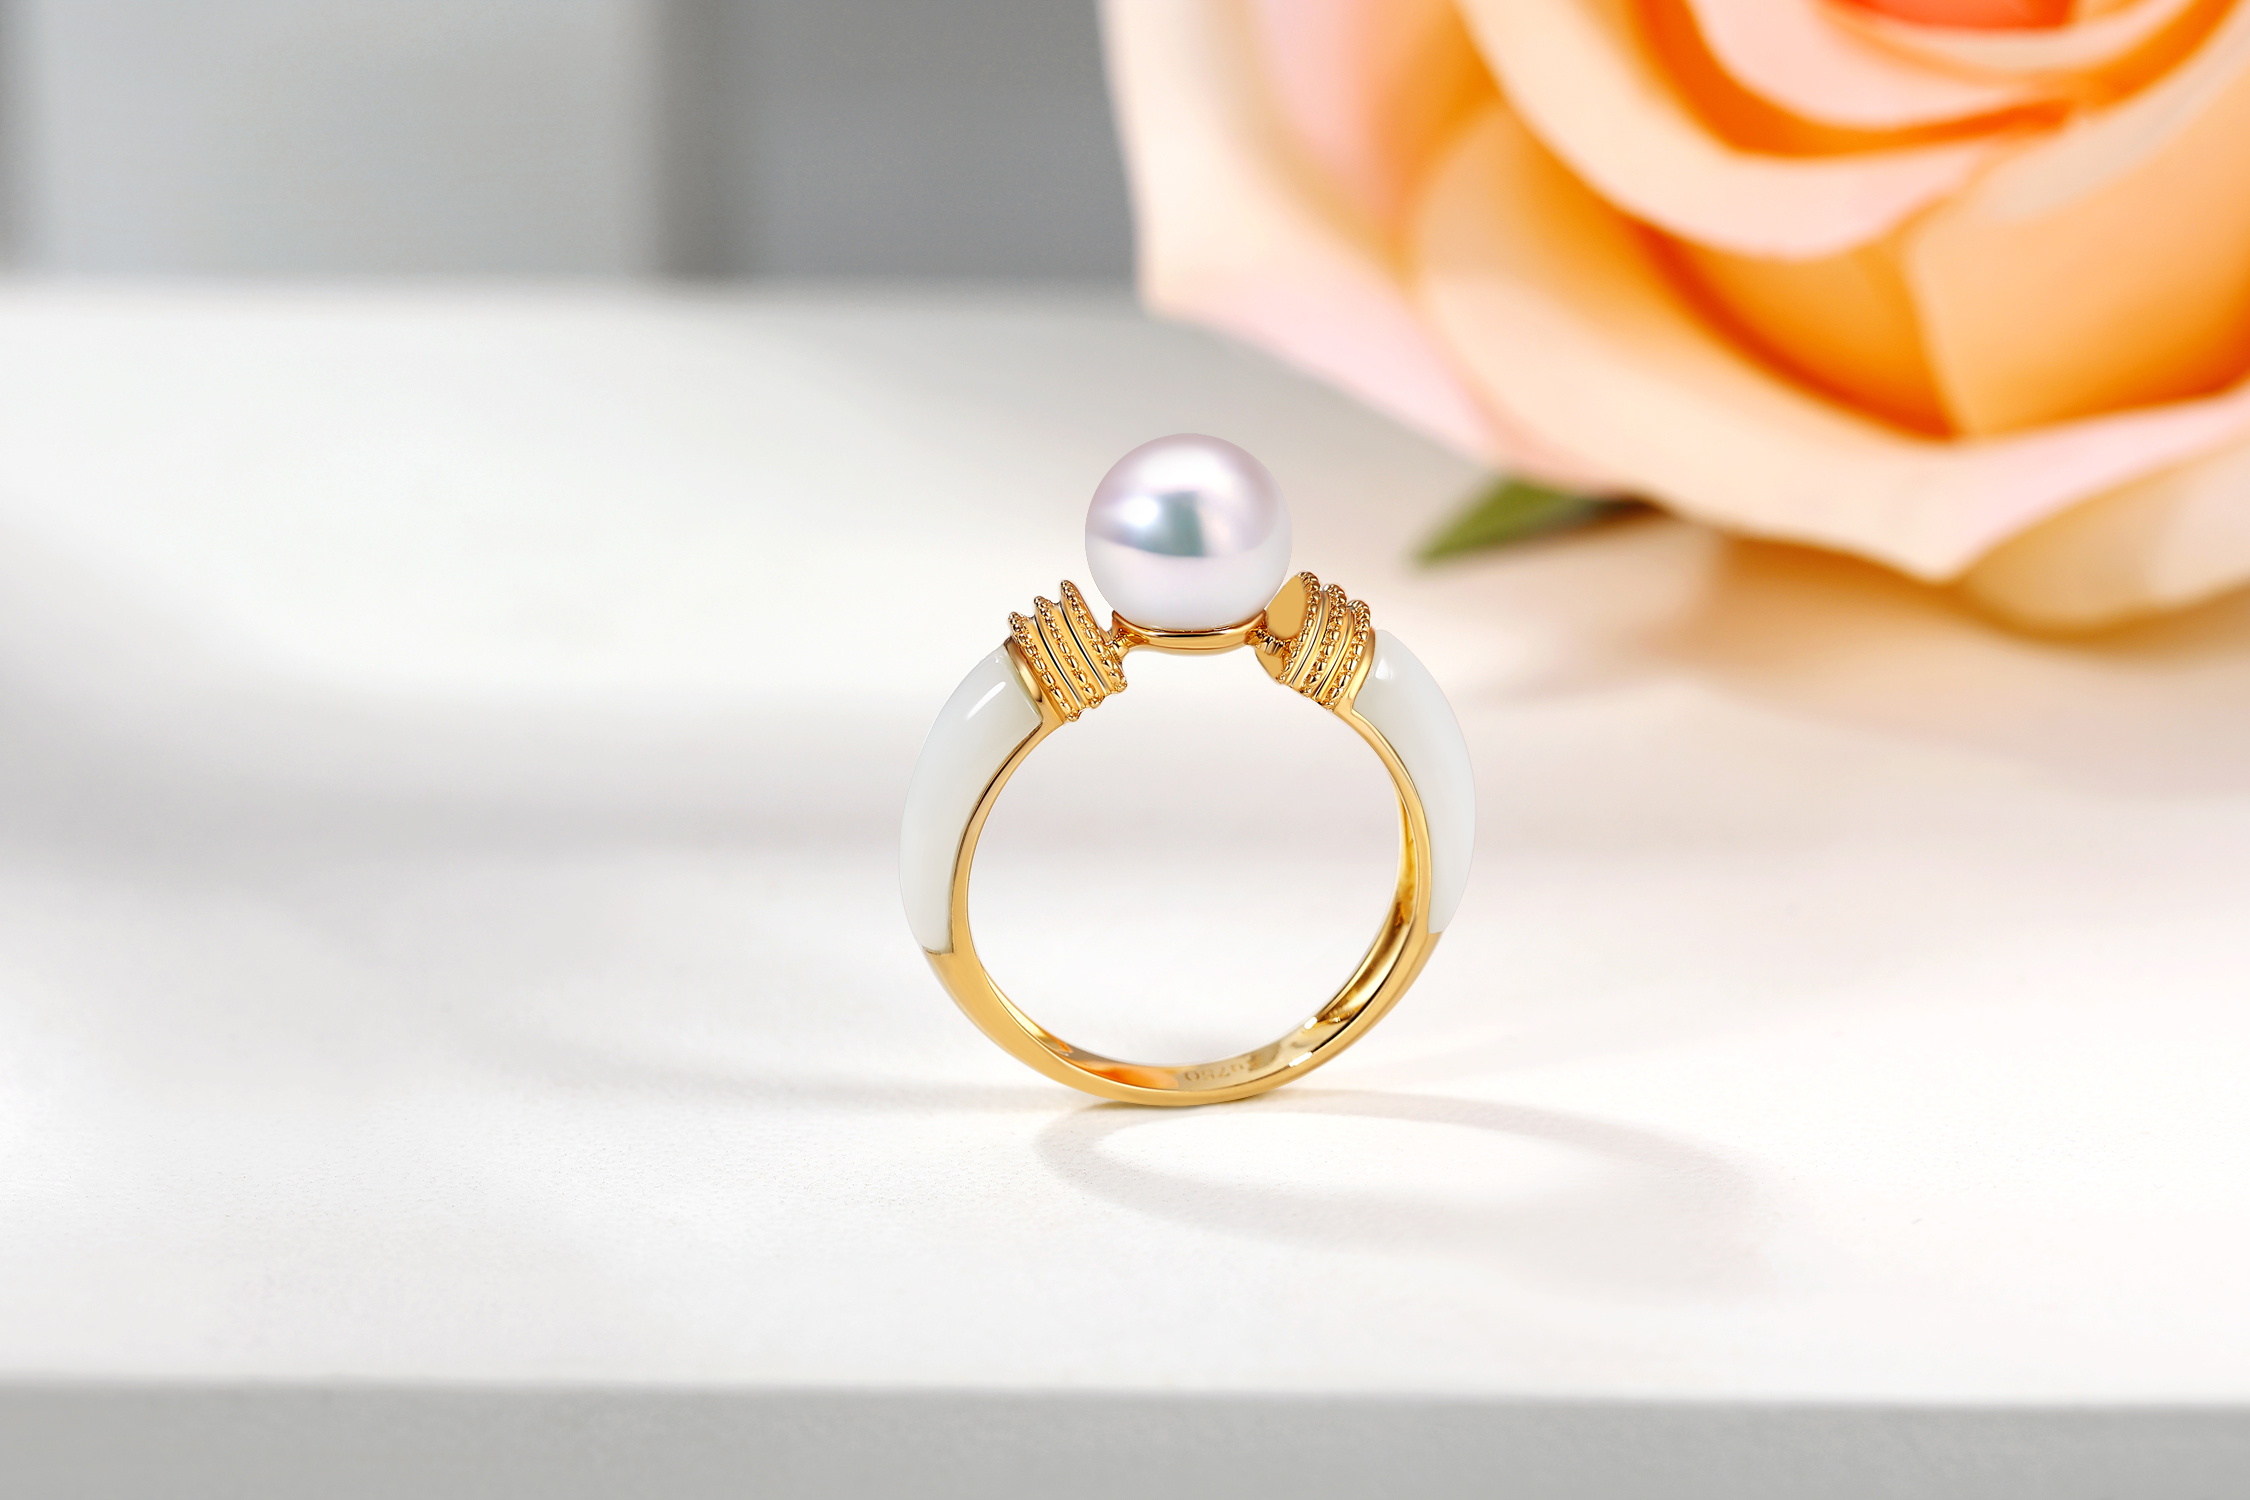 时尚正品18K黄金镶嵌天然珍珠戒指送礼聚会指环定制定做珠宝首饰